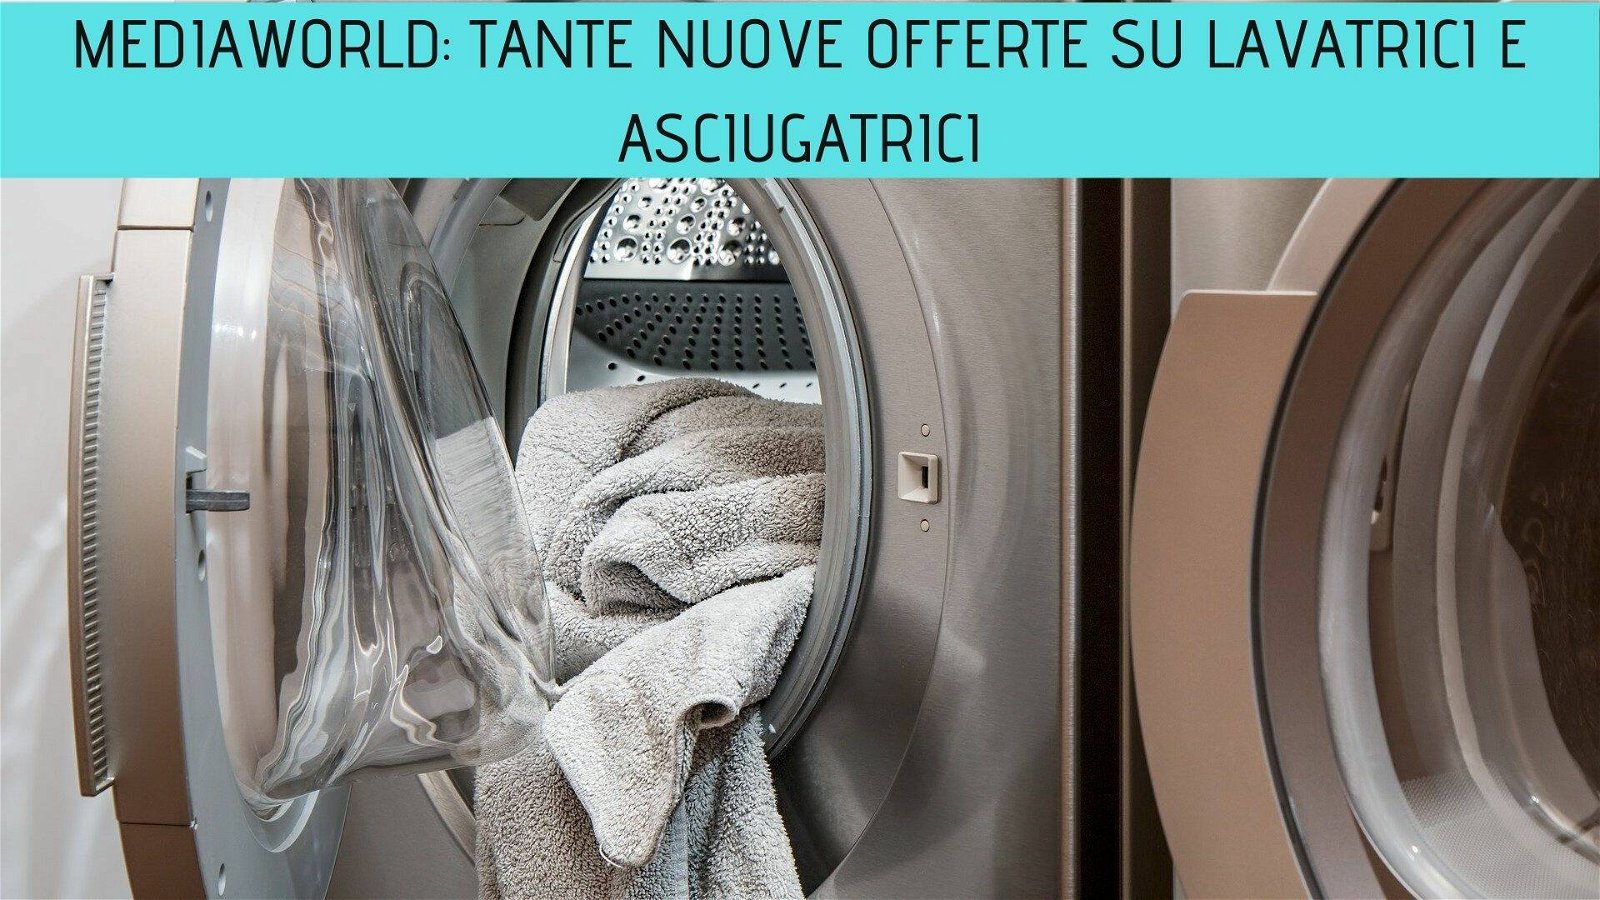 Immagine di Mediaworld: tante nuove offerte su lavatrici e asciugatrici